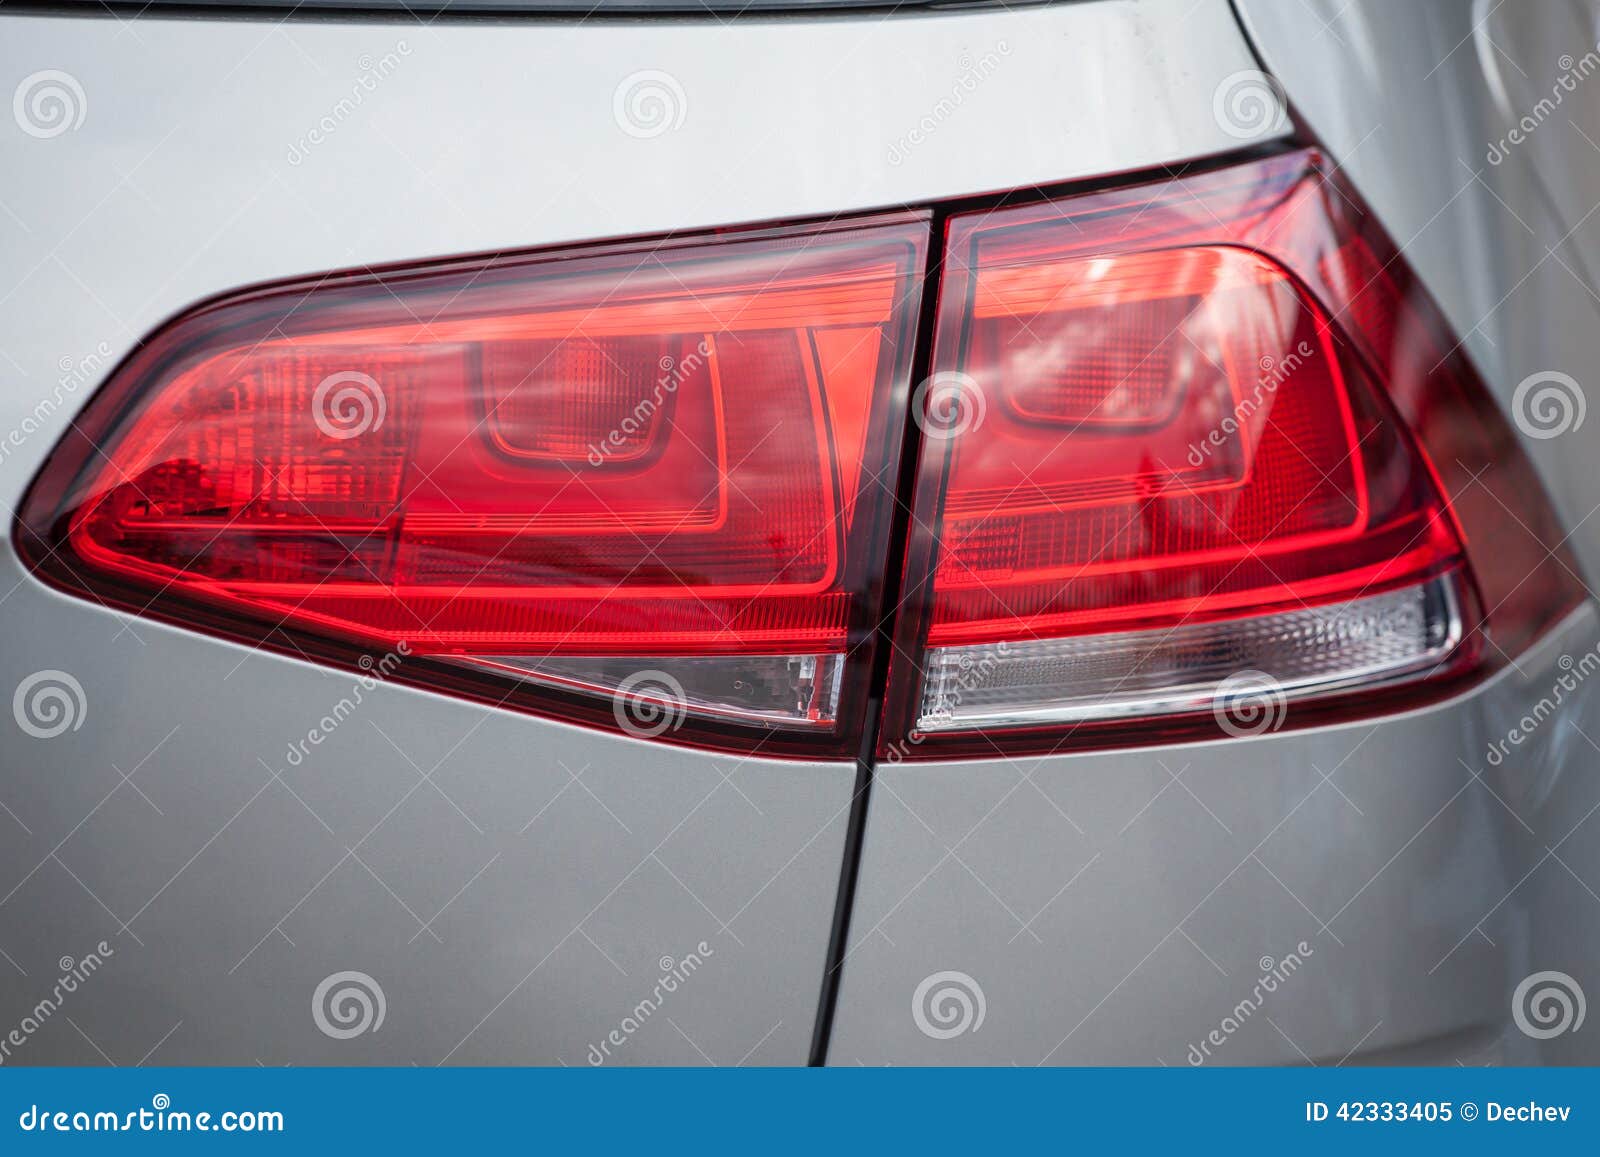 Een Achterlicht Op Een Moderne Auto Stock Afbeelding of vervoer, einde: 42333405